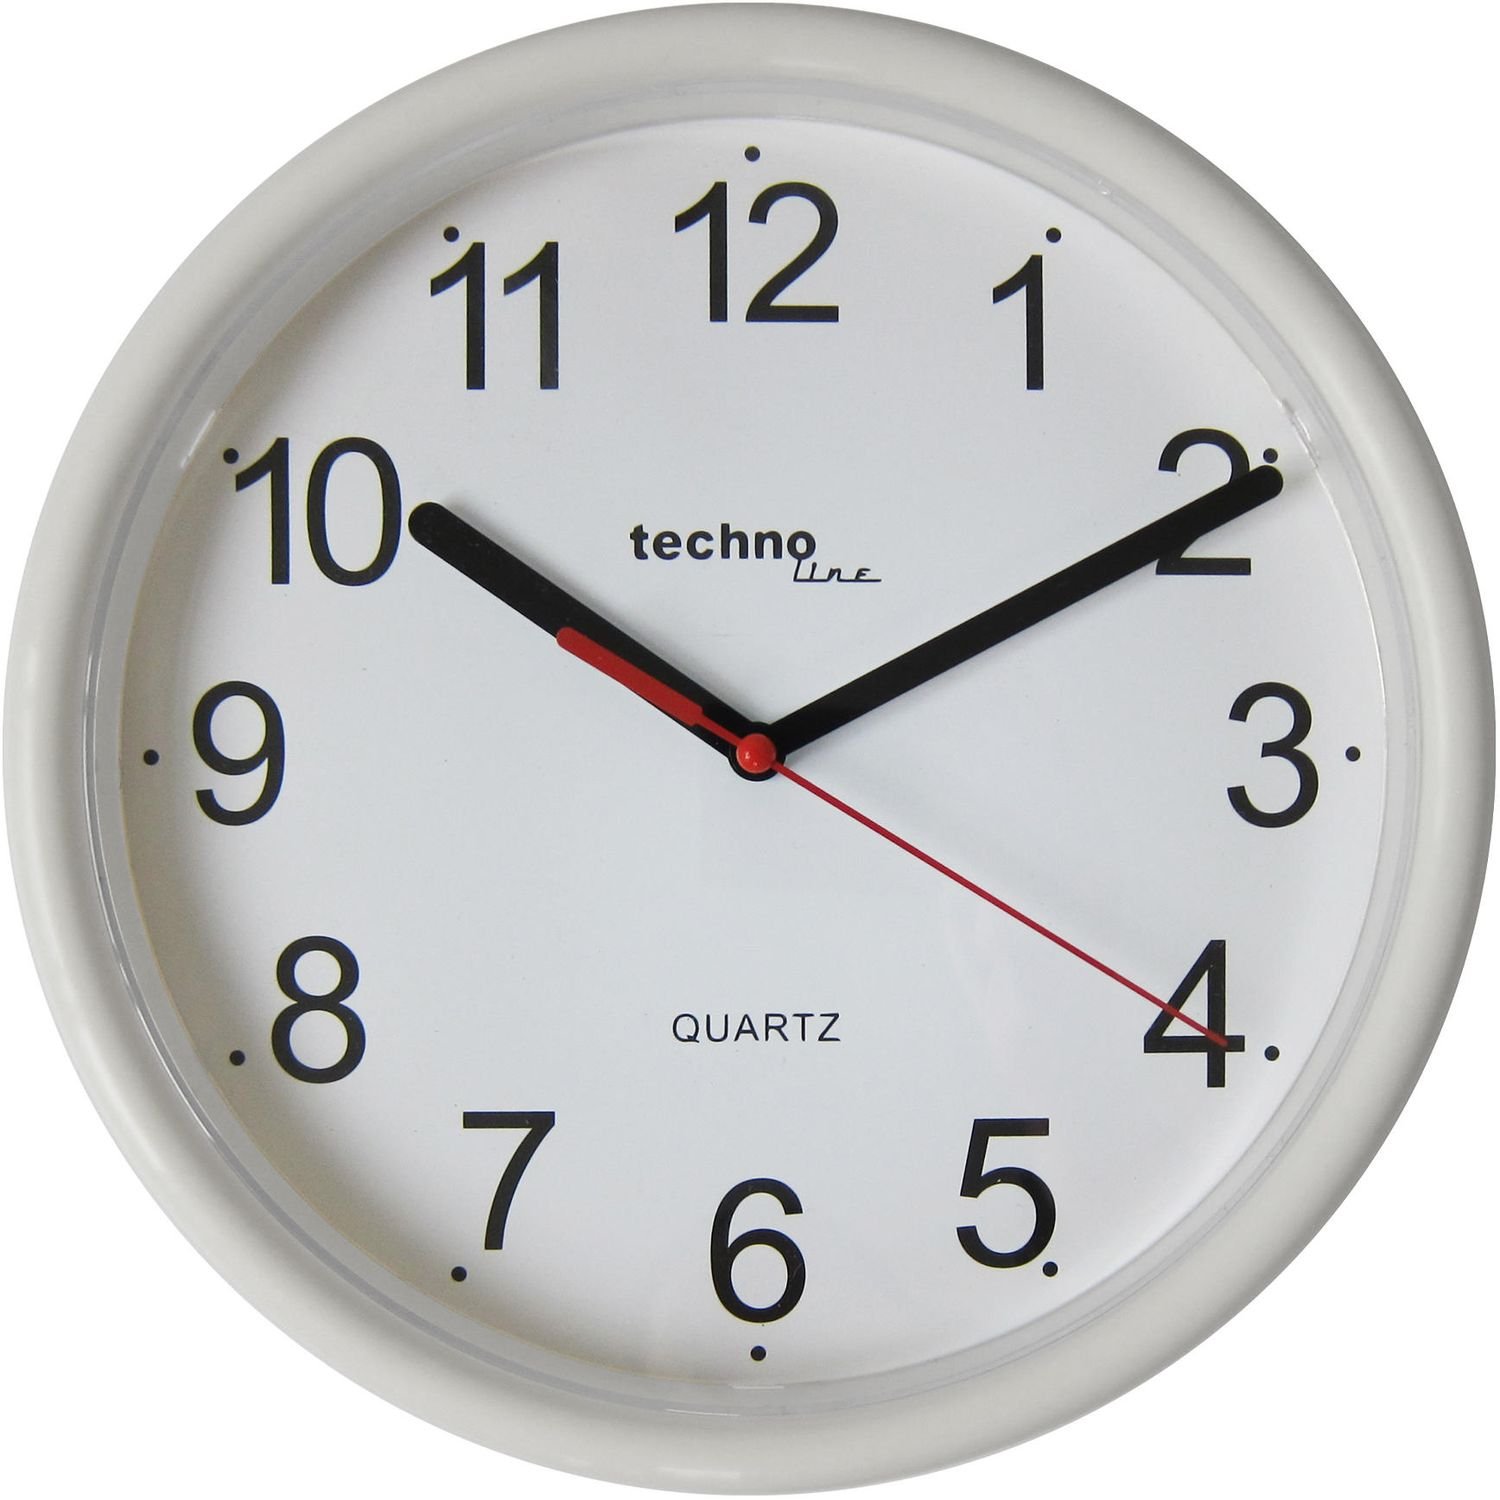 Часы настенные Technoline WT600 White (WT600 weis) - фото 1